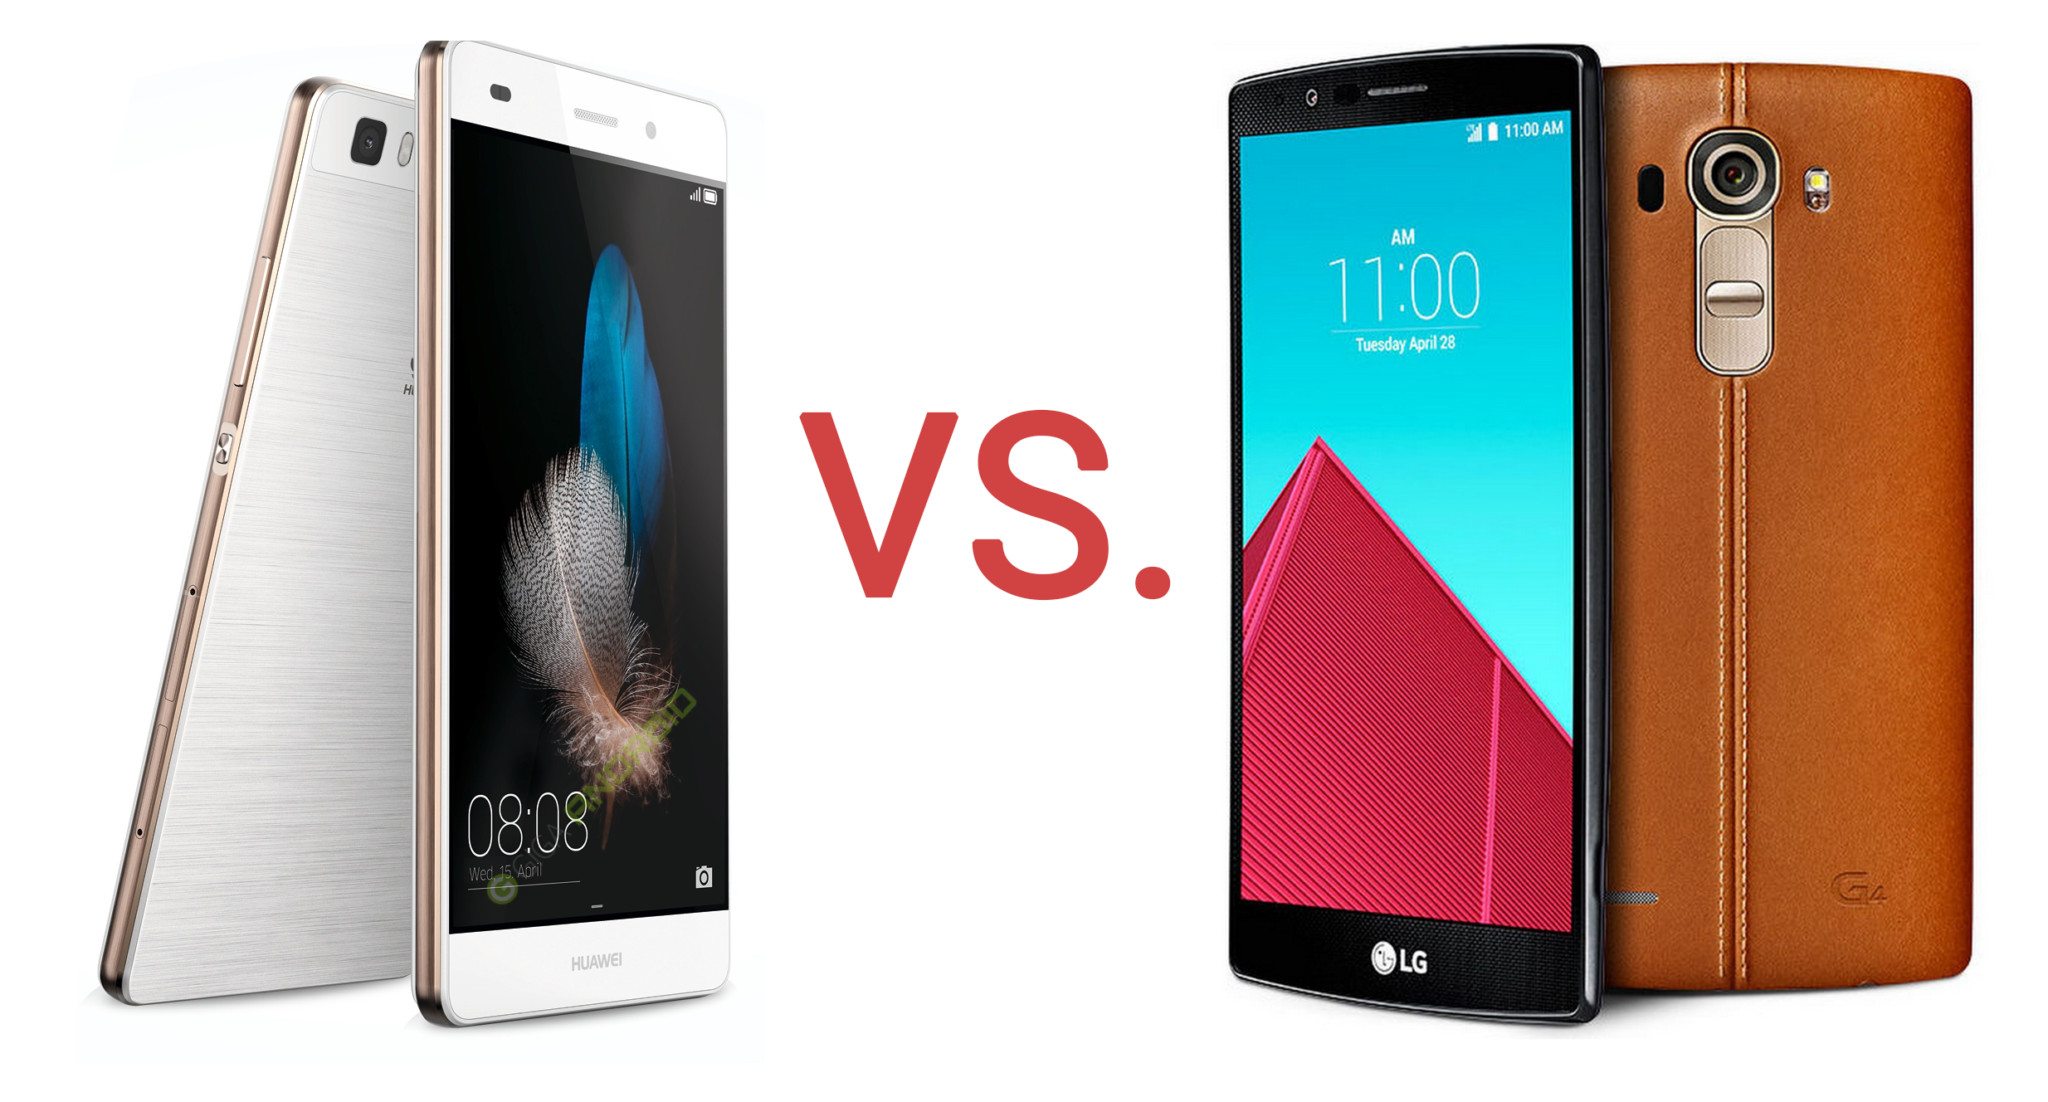 Fototest – Huawei P8 vs. LG G4